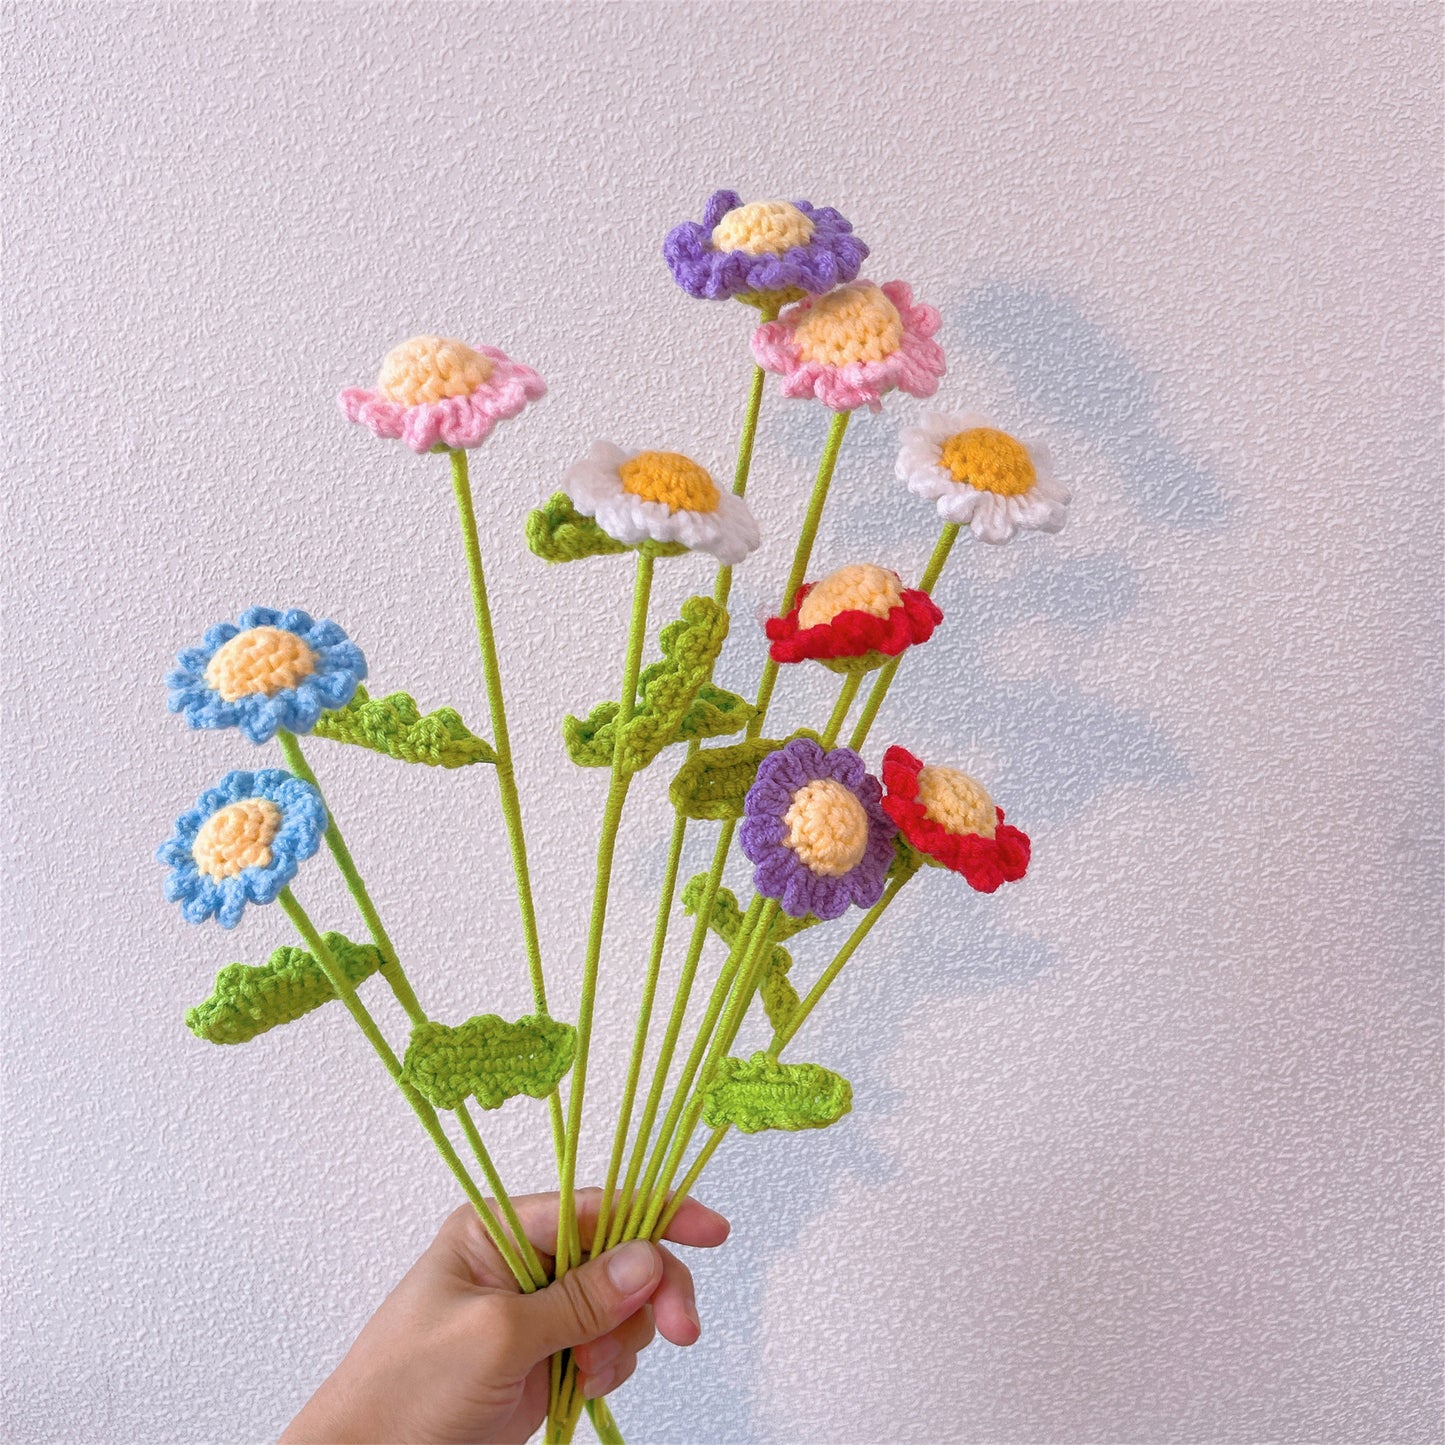 Blumen für den Geburtsmonat April: Handgefertigter Strauß mit 3 Gänseblümchen – Geburtstagsblumen zum Feiern besonderer Anlässe